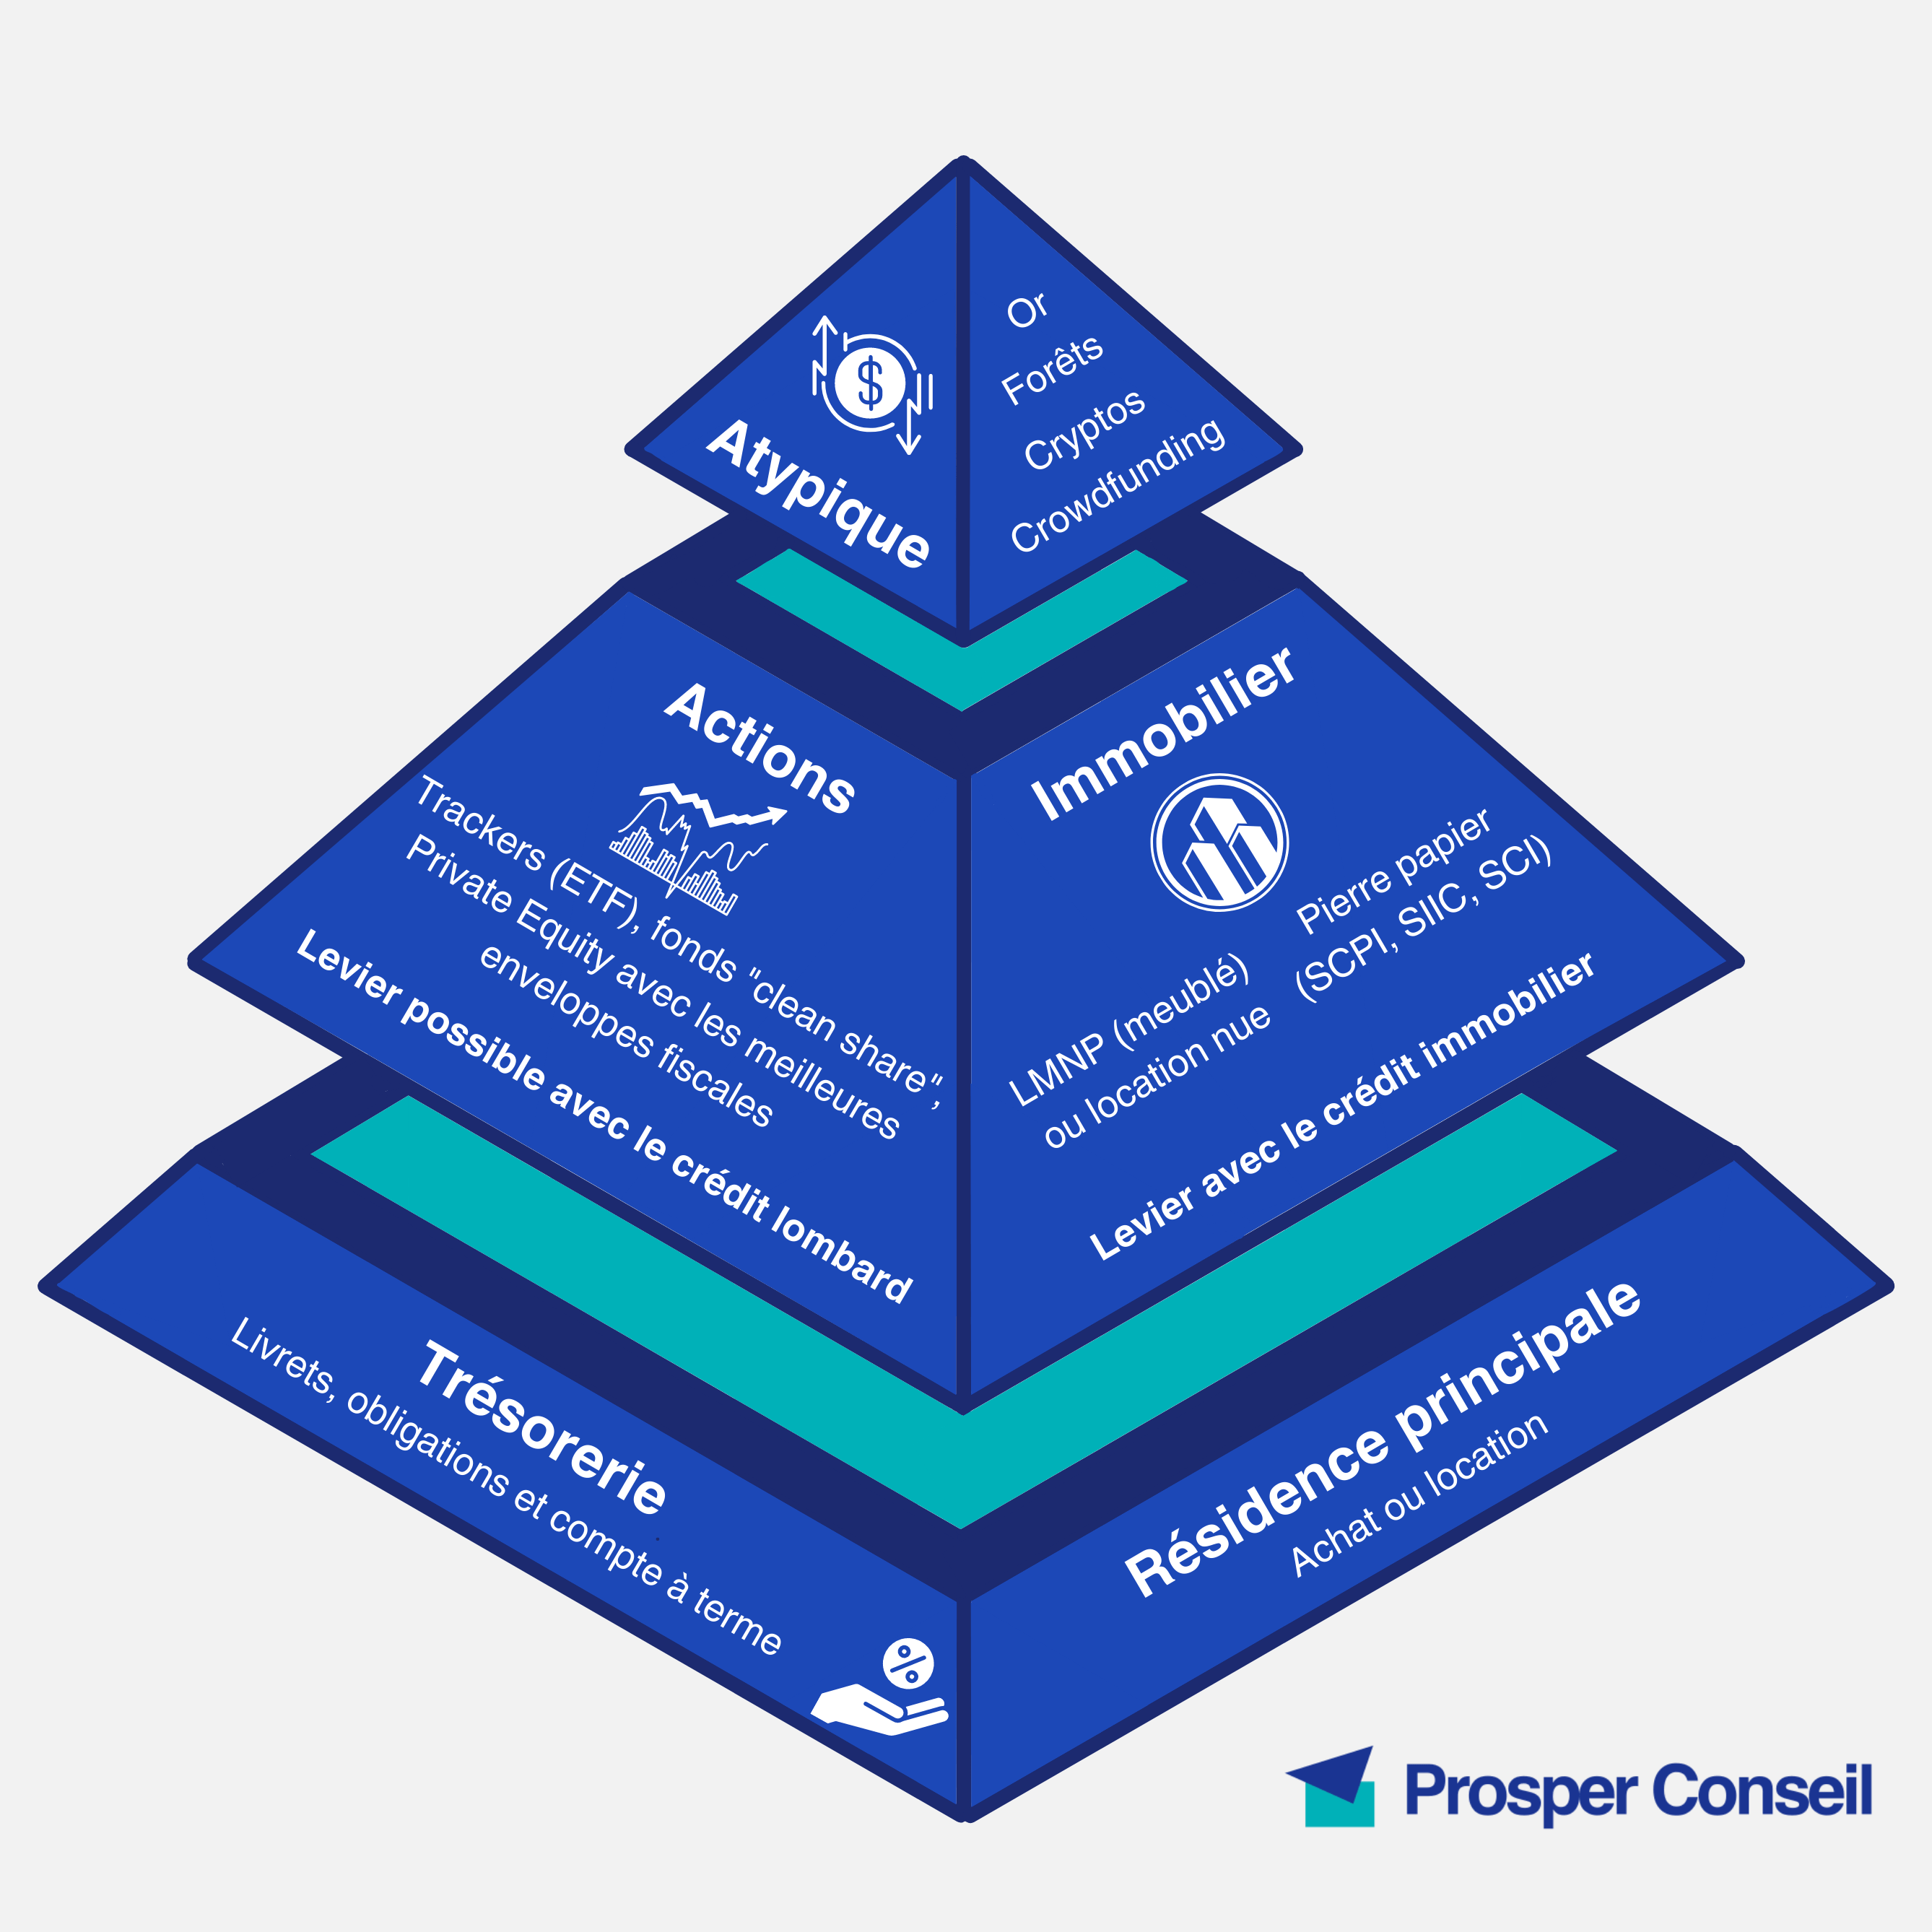 Pyramide Prosper Conseil - Allocation patrimoniale